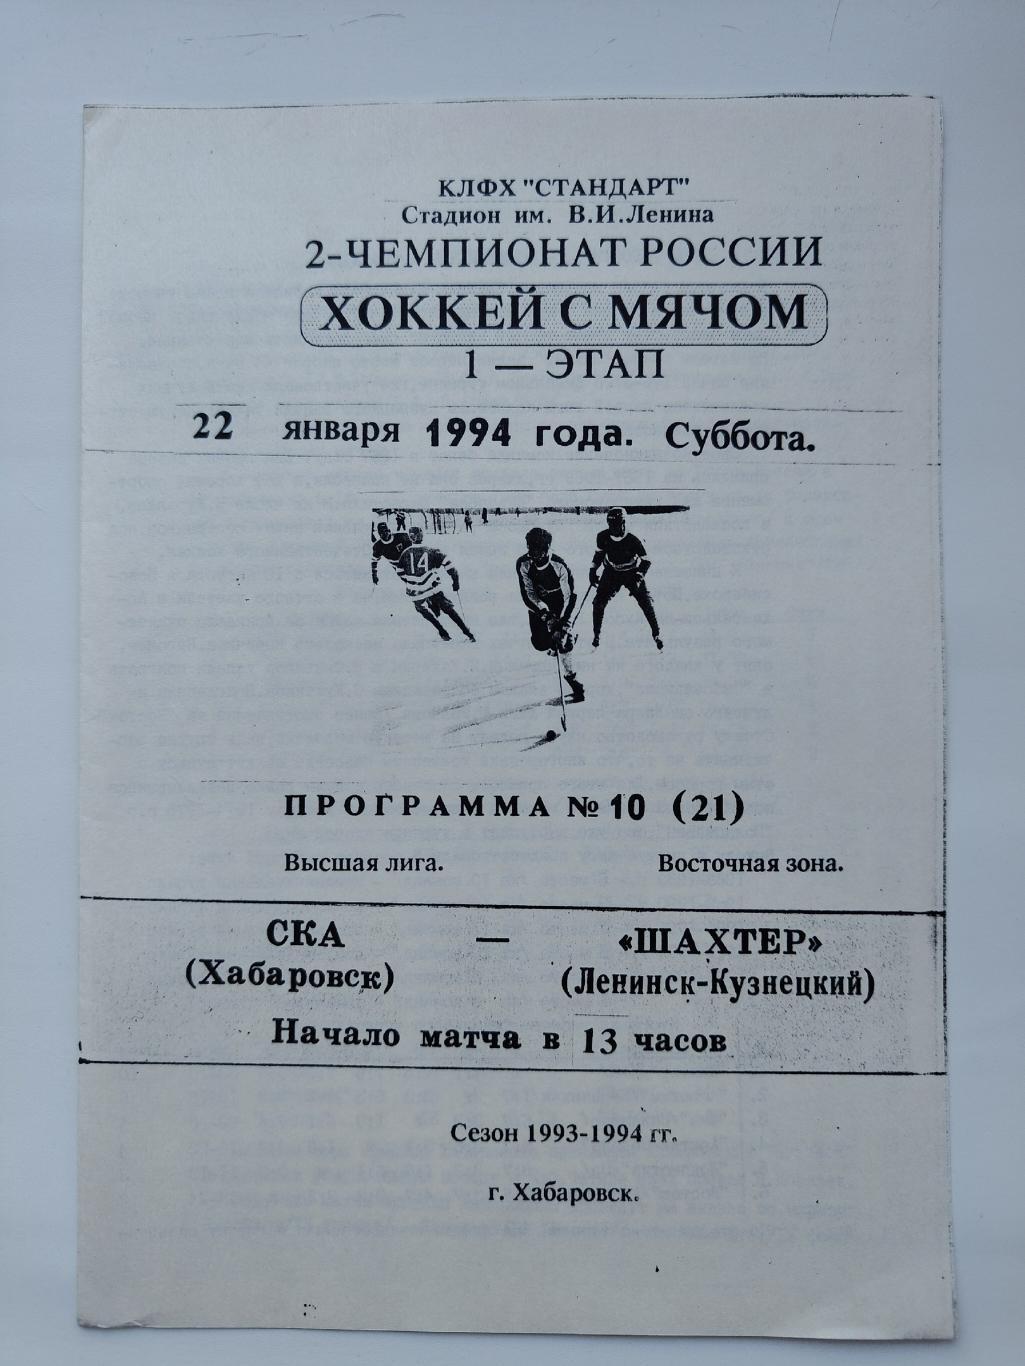 Хоккей с мячом. СКА Хабаровск - Шахтер Ленинск-Кузнецкий 22 января 1994